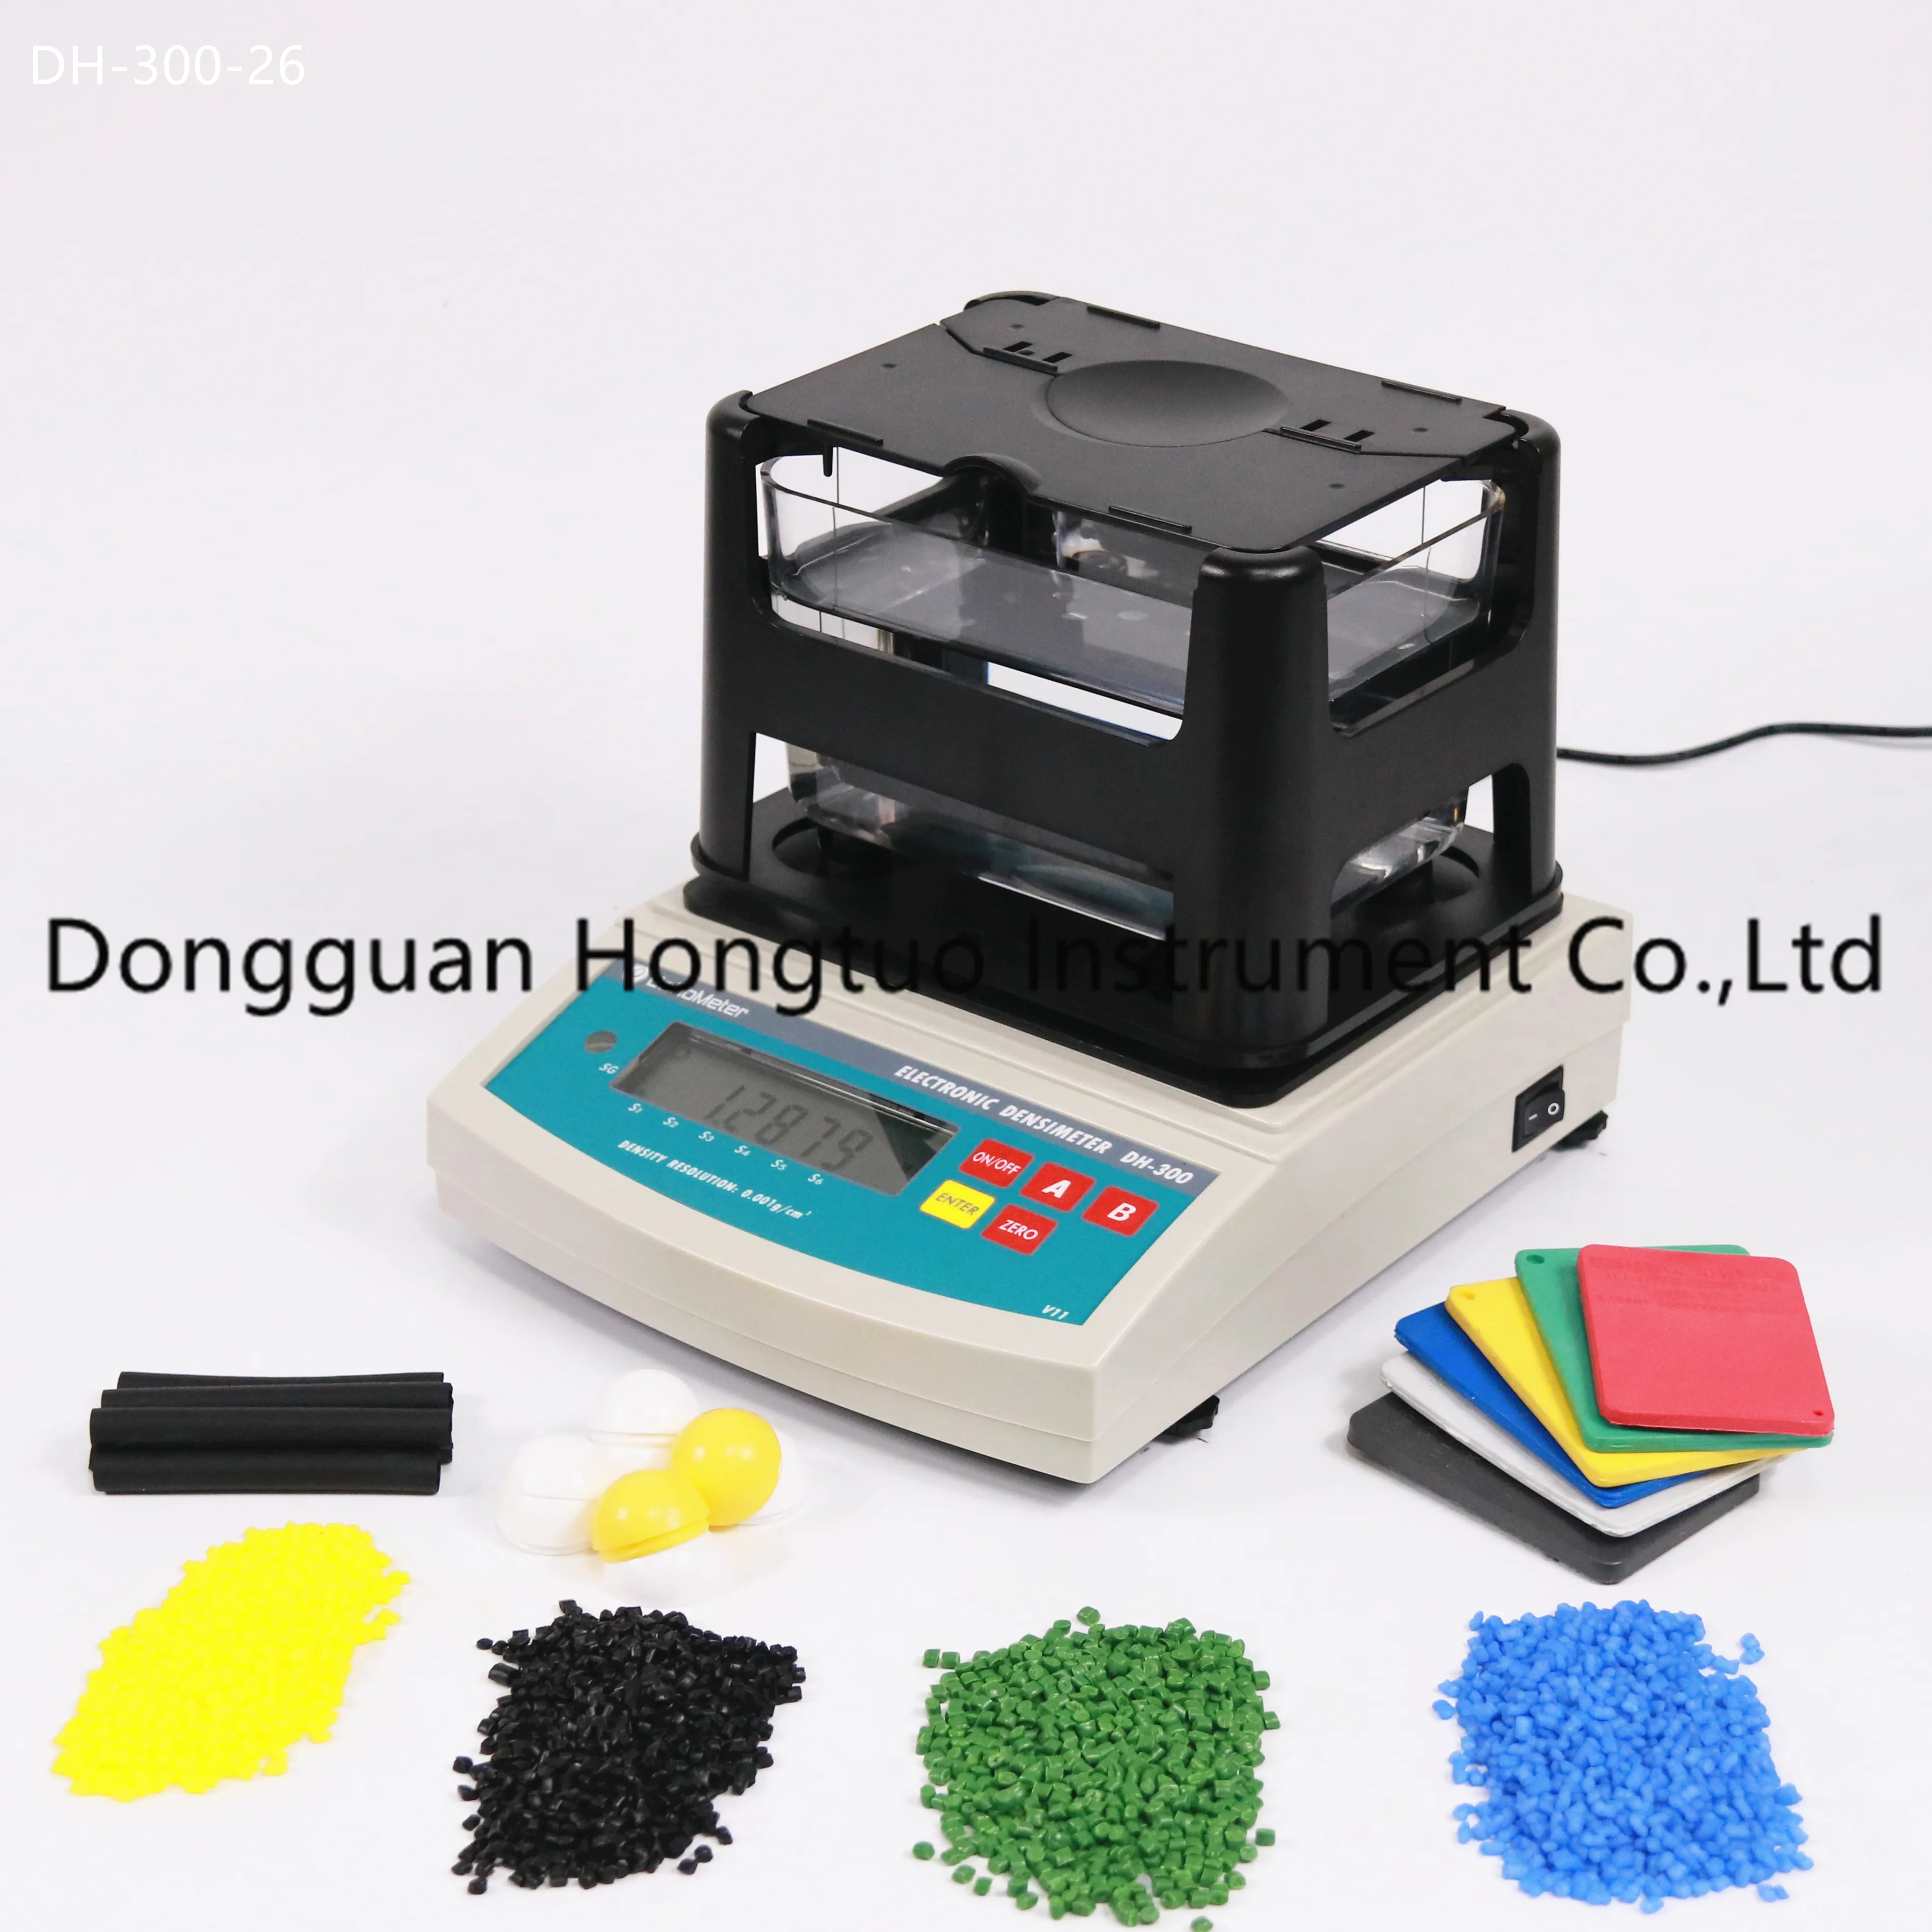 DH-300 популярный поставщик резиновый электронный денсиметр, сырой измеритель пластиковой плотности, тестер пластиковой плотности с максимальным качеством